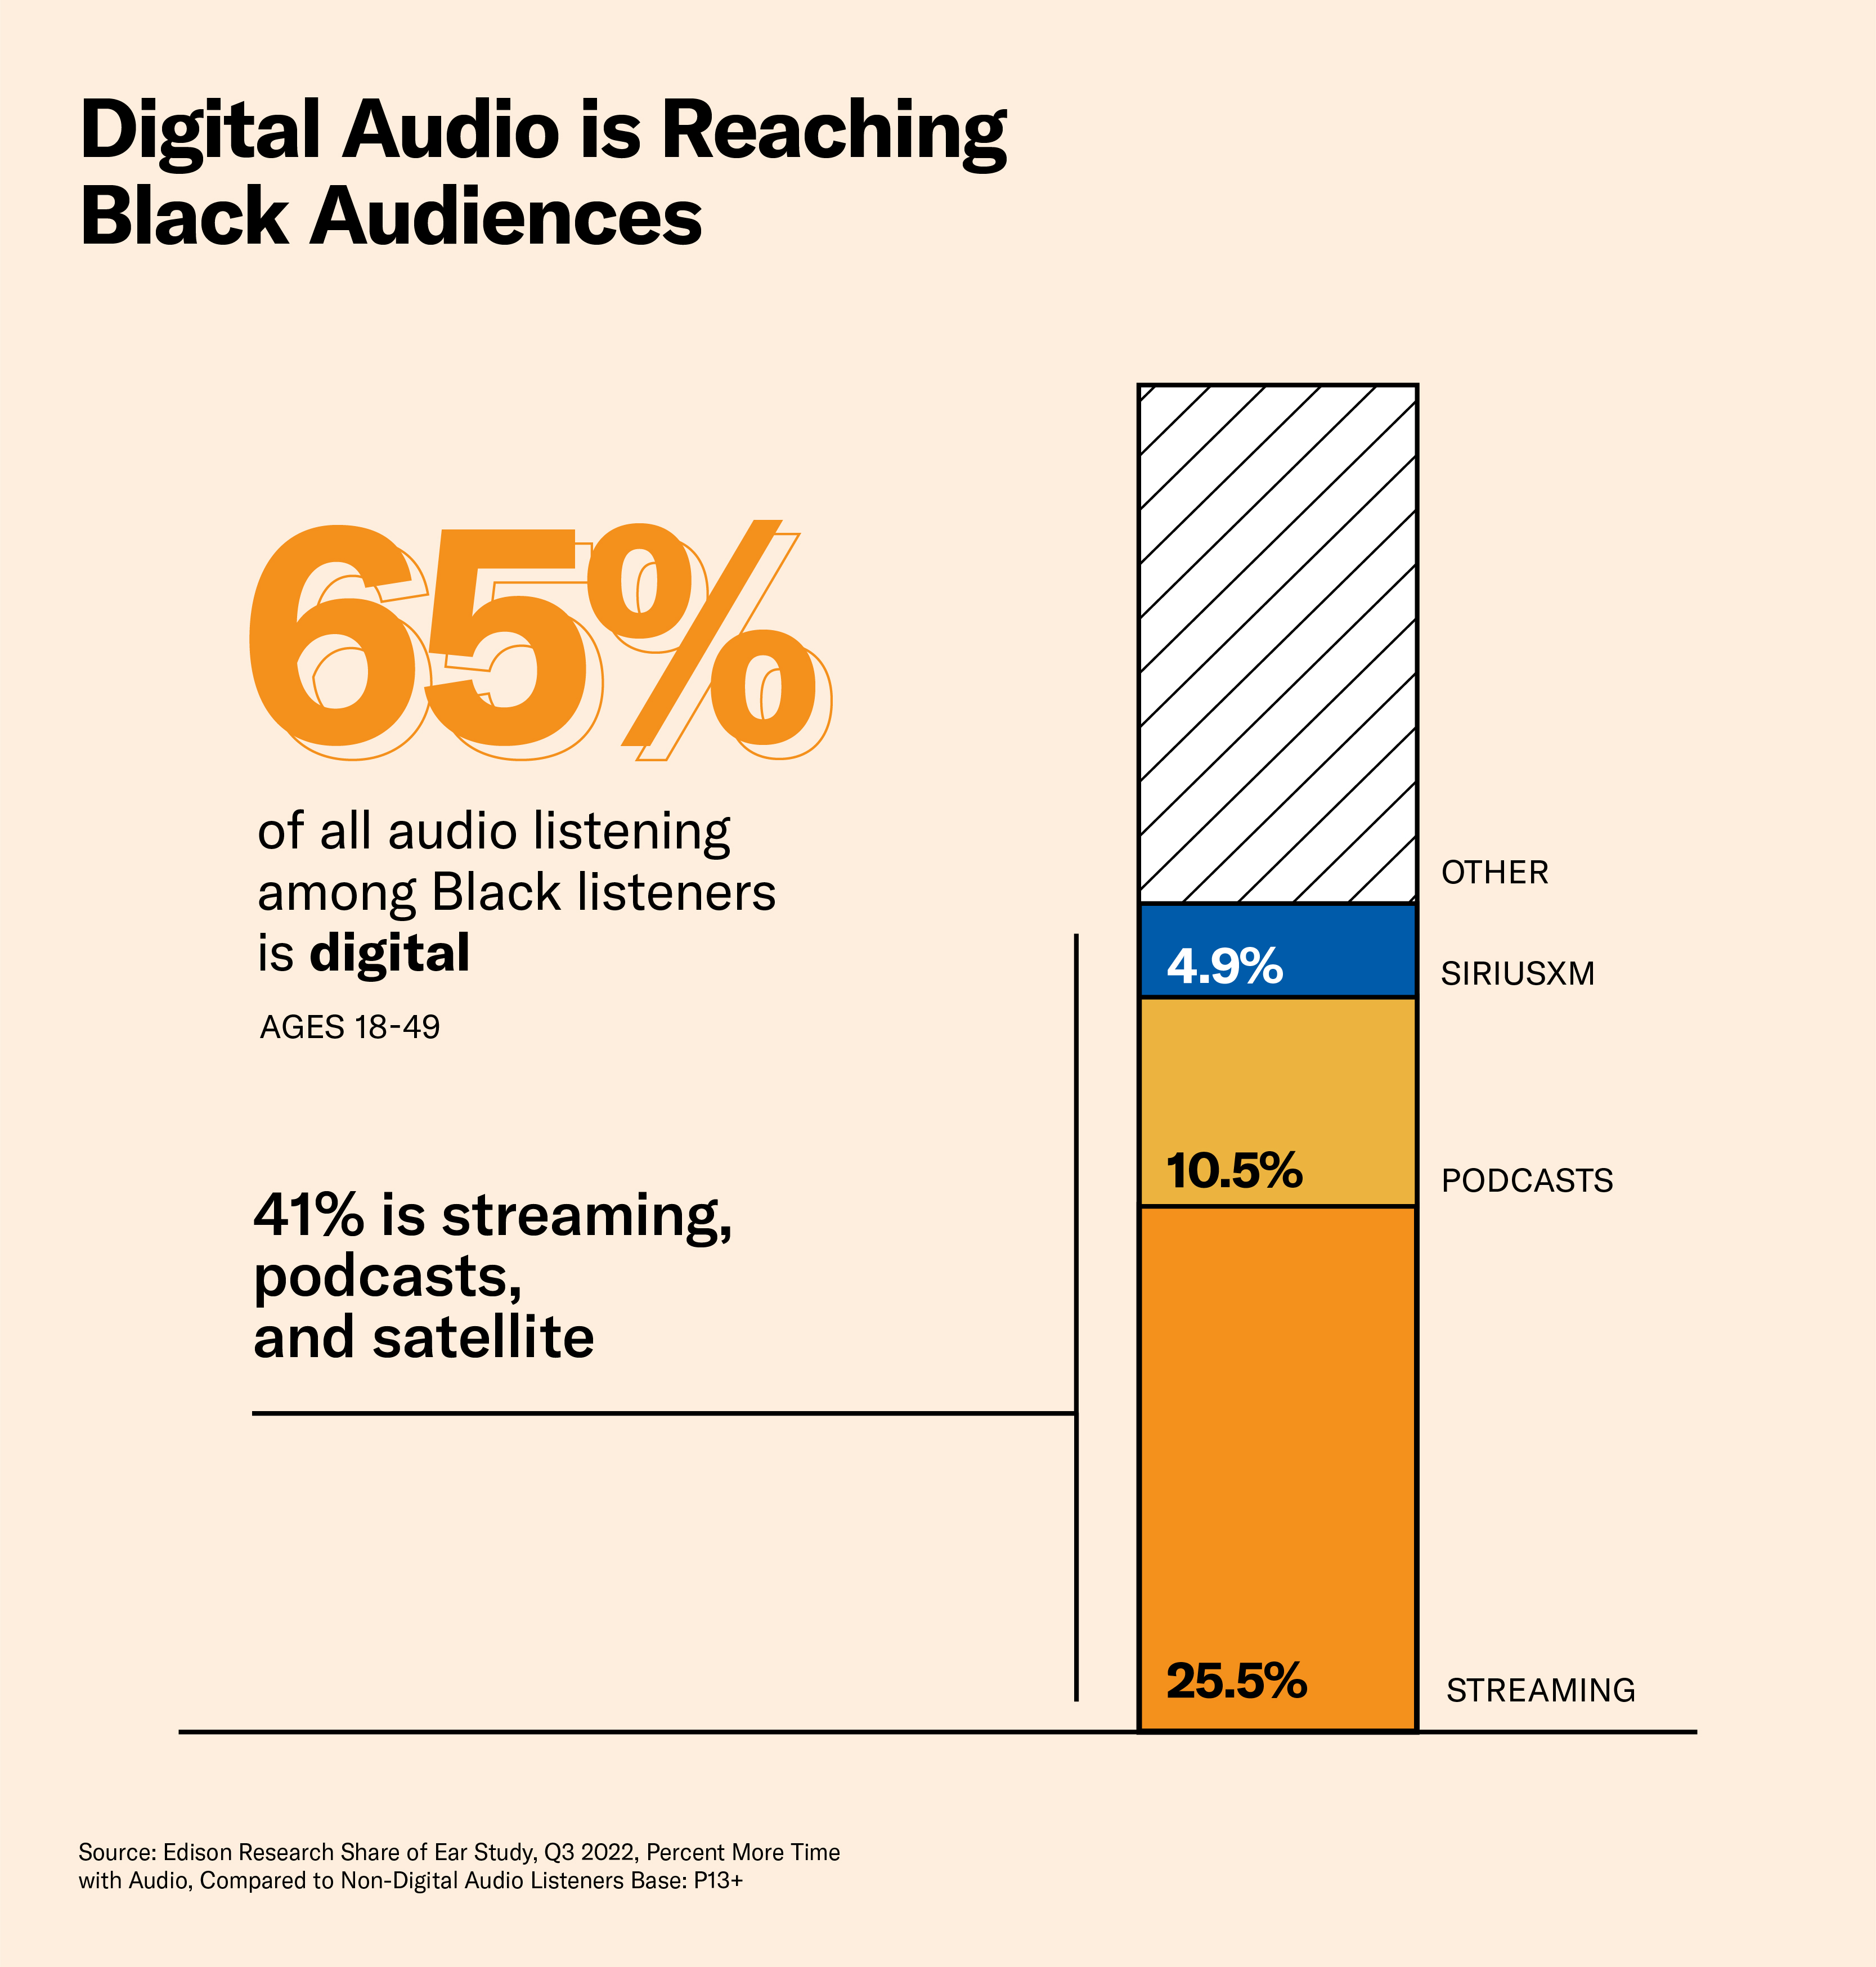 Digital audio is reaching Black audiences